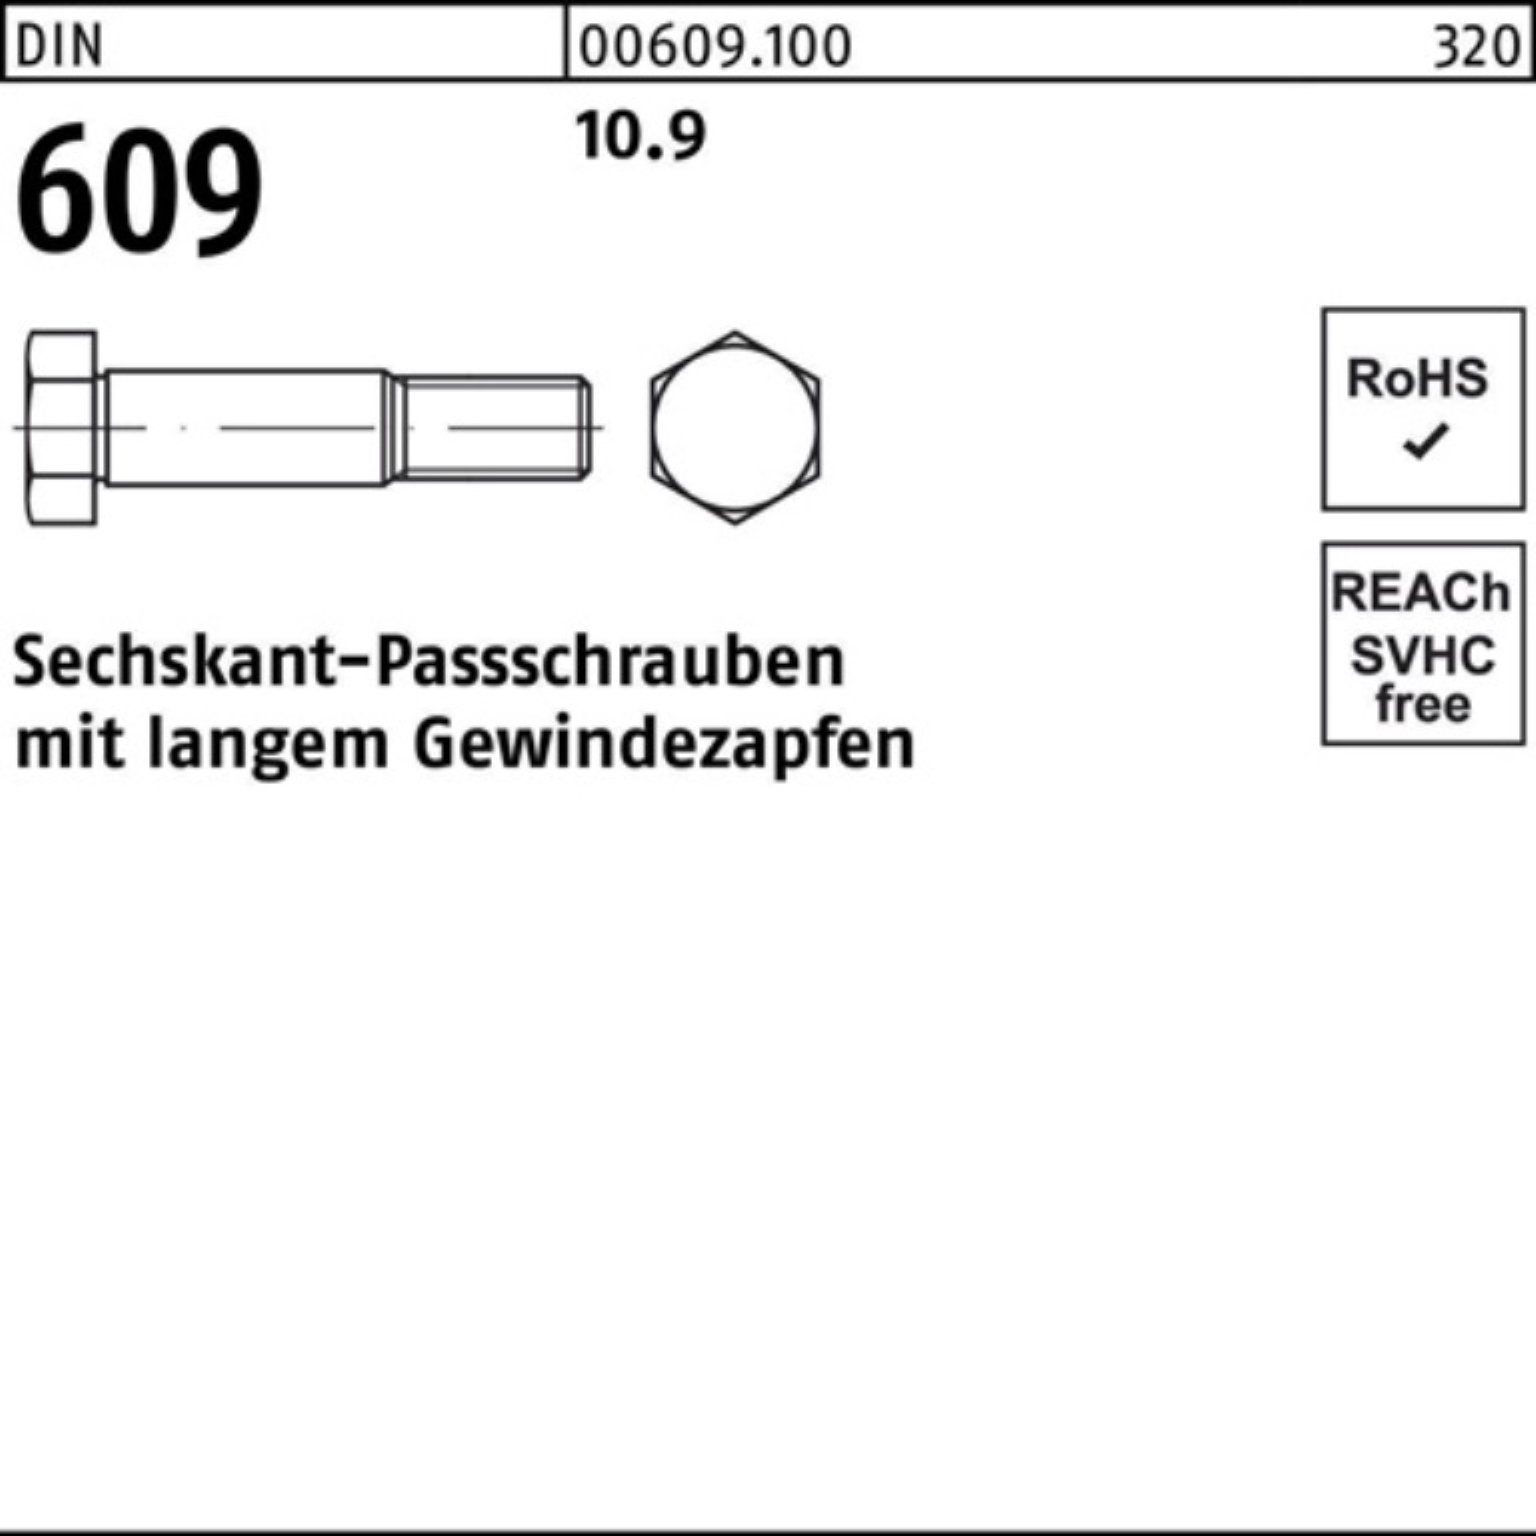 Pack 100er M10x 609 Gewindezapfen Reyher Schraube DIN langem Sechskantpassschraube 50